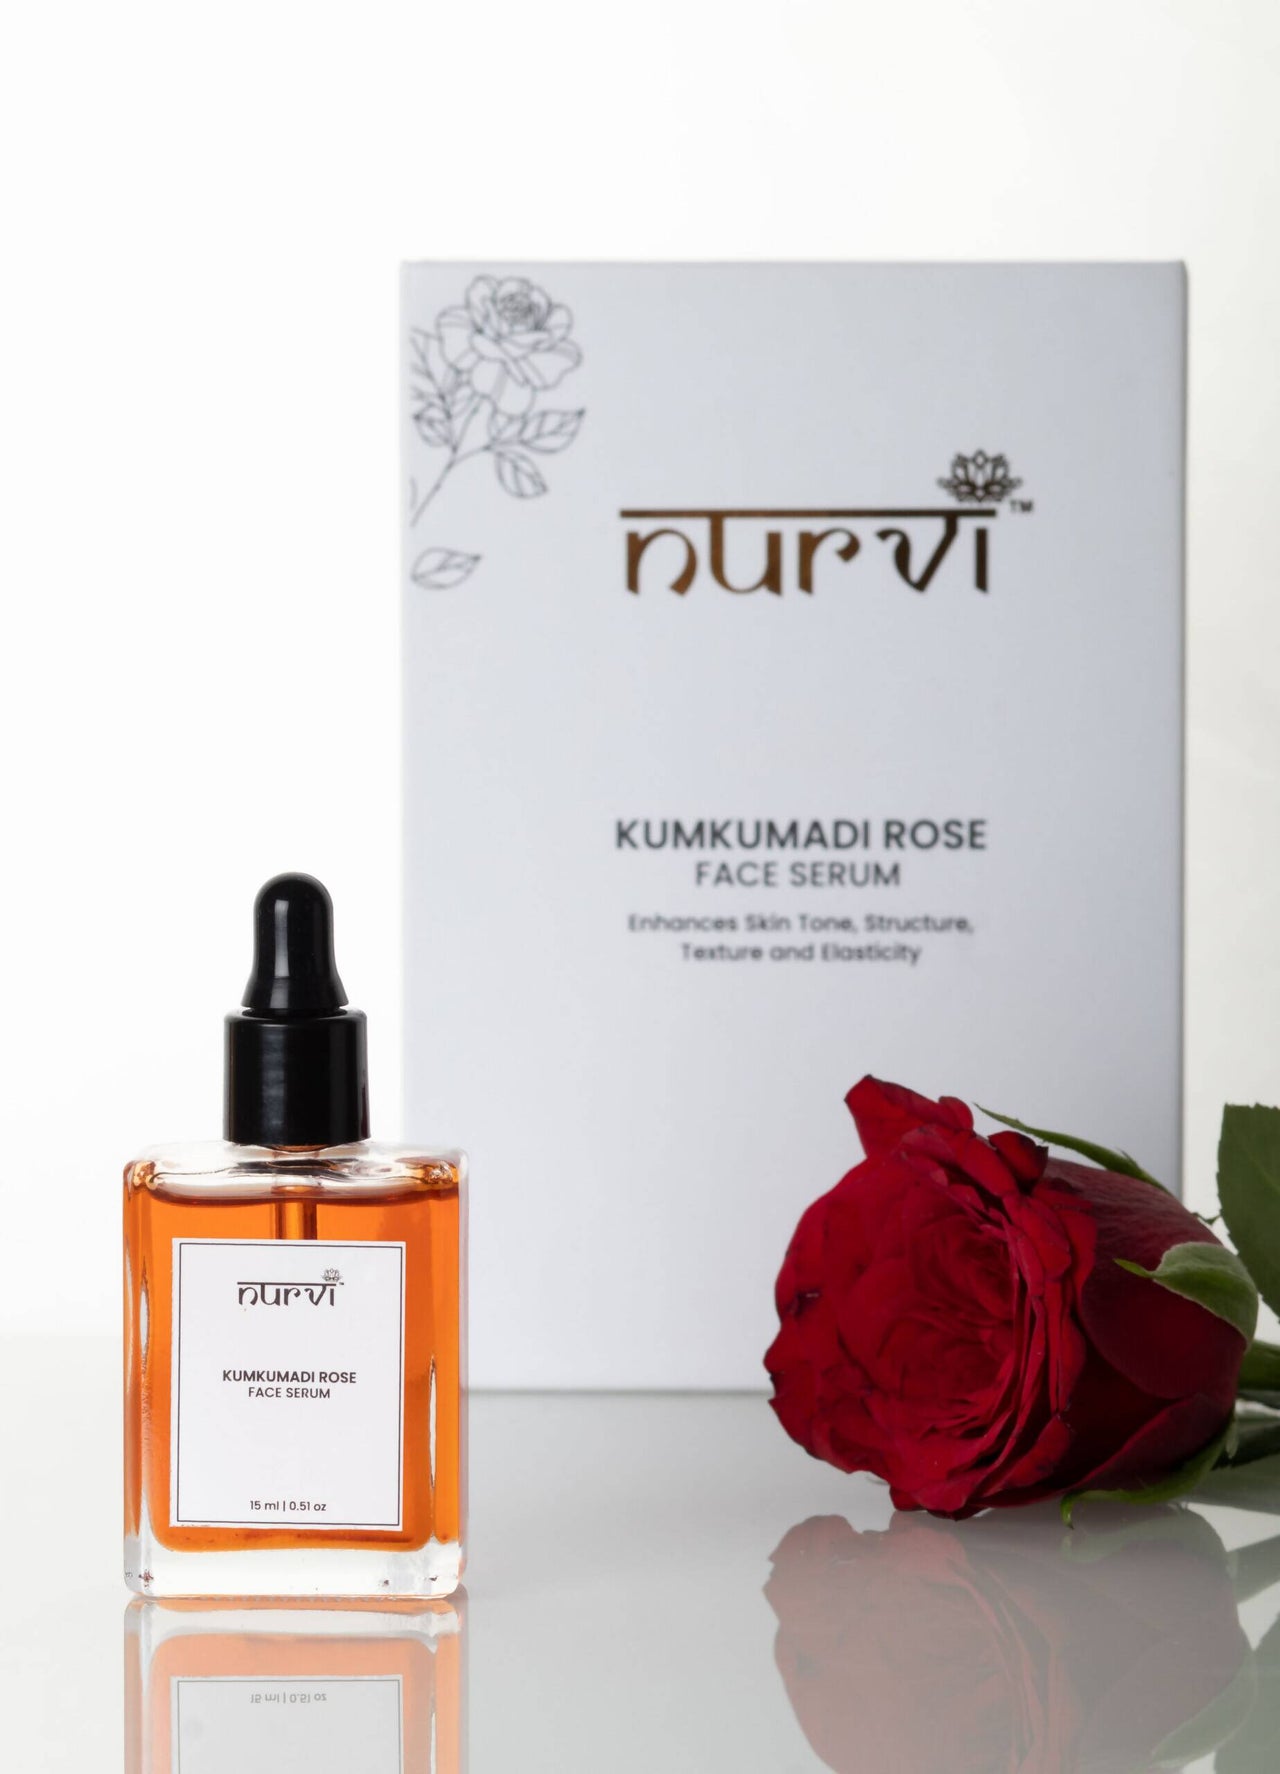 Nurvi Kumkumadi Rose Face Serum - Distacart